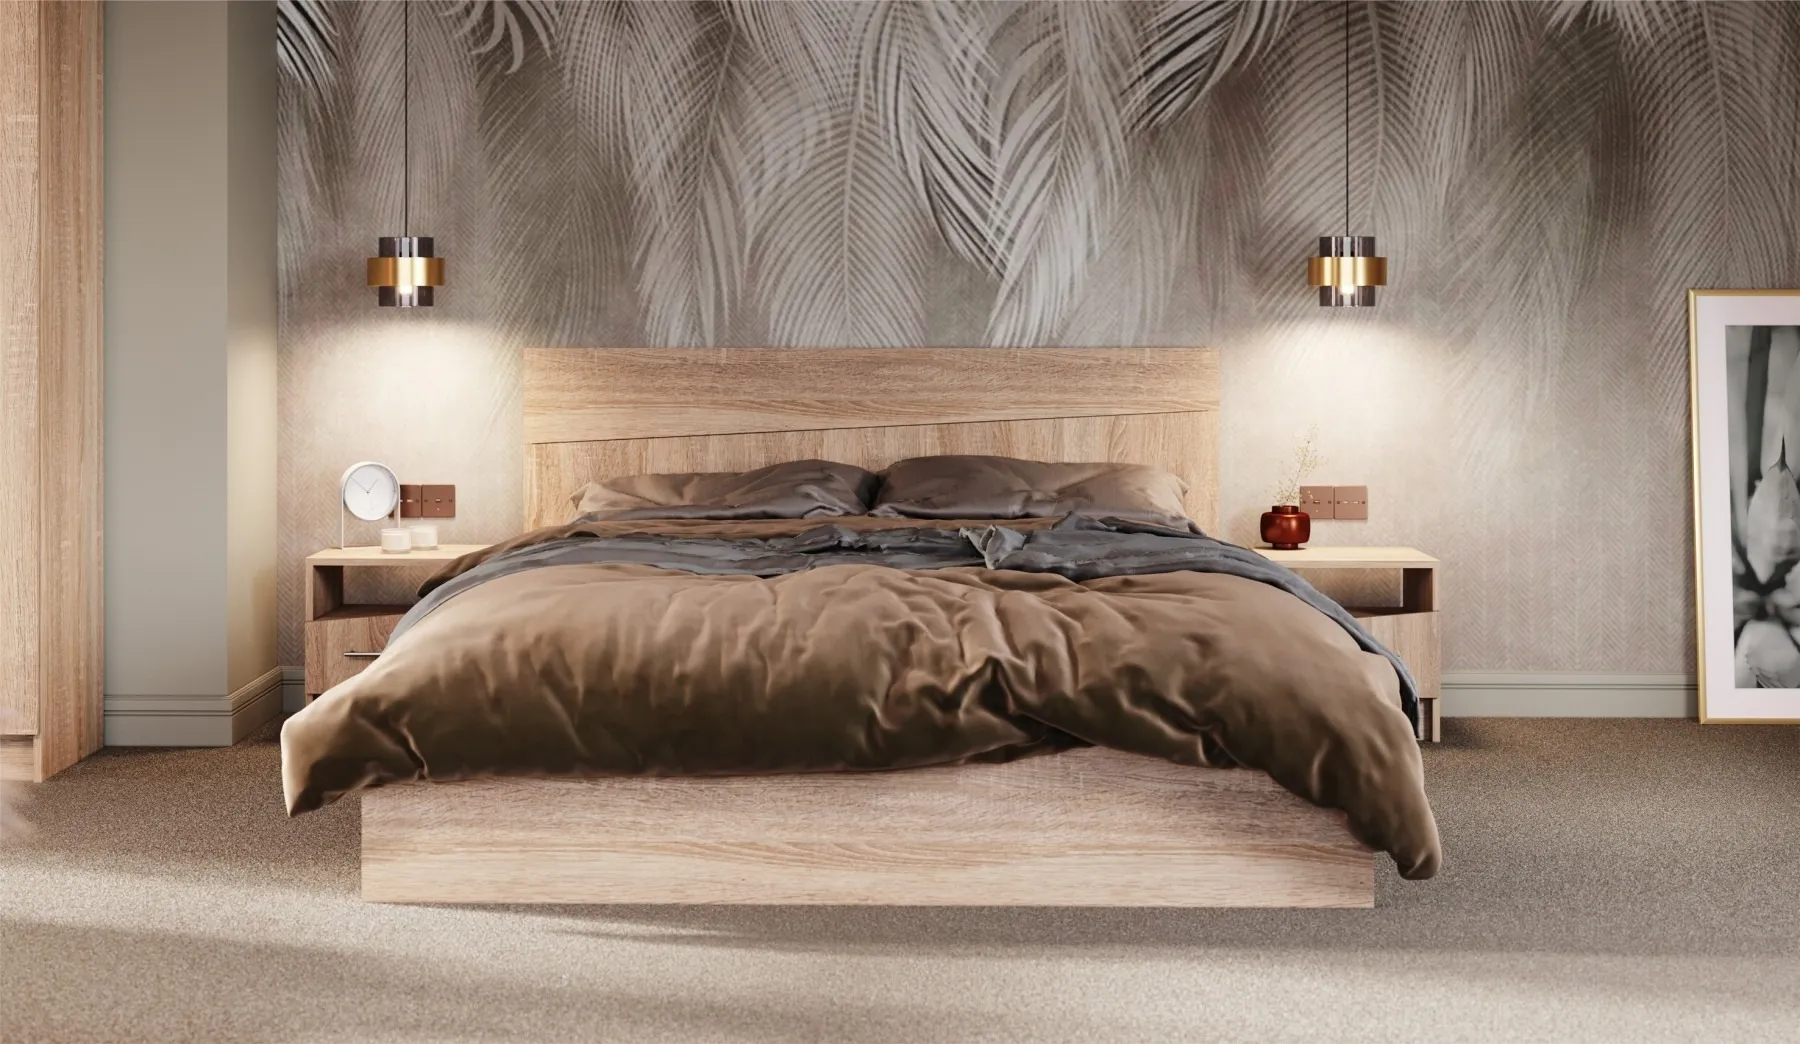 Кровать 160 см Антария дуб сонома